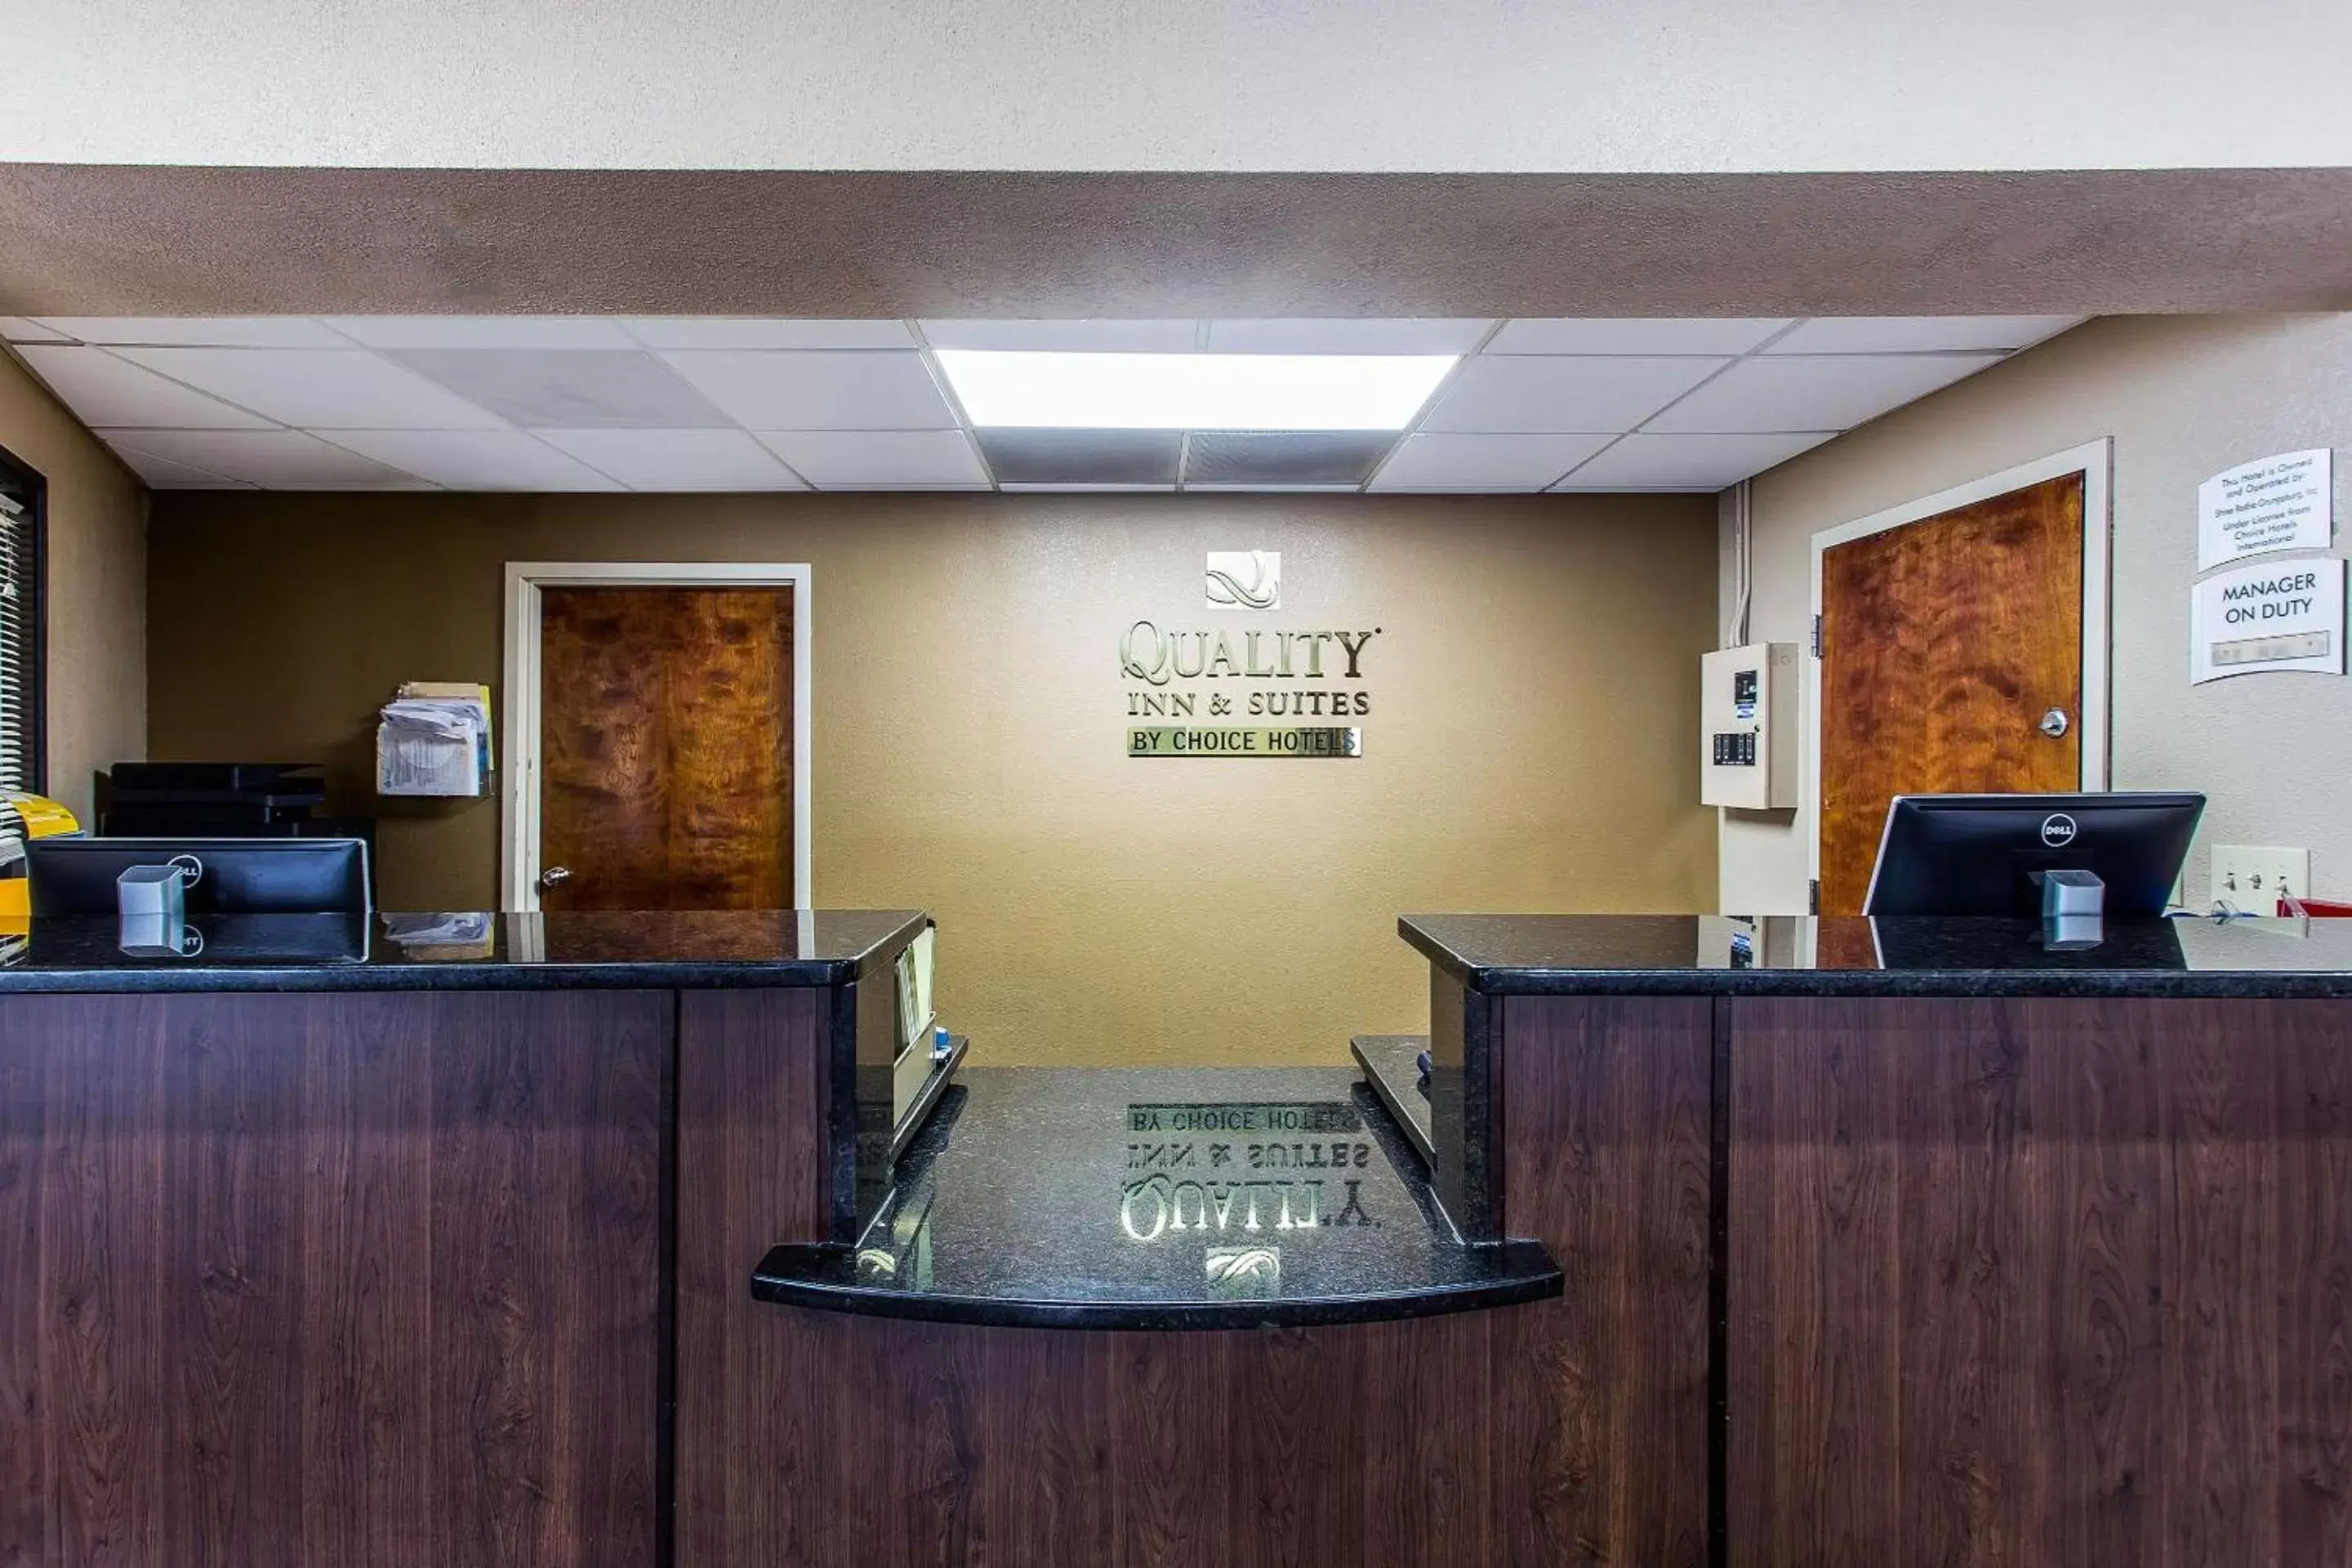 Lobby or reception, Lobby/Reception in Quality Inn & Suites Orangeburg